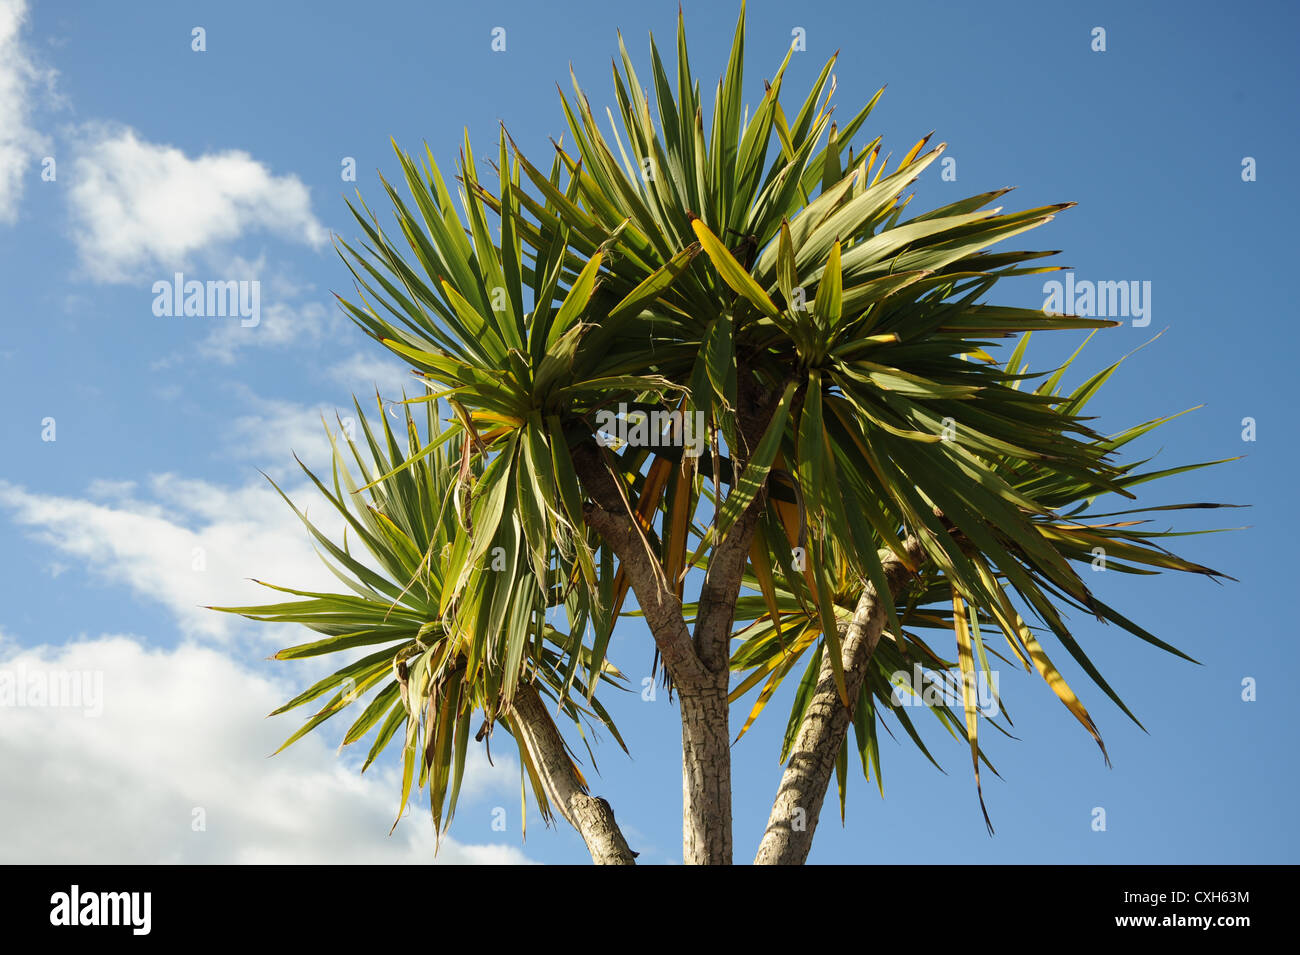 Palm tree against a blue sky Banque D'Images